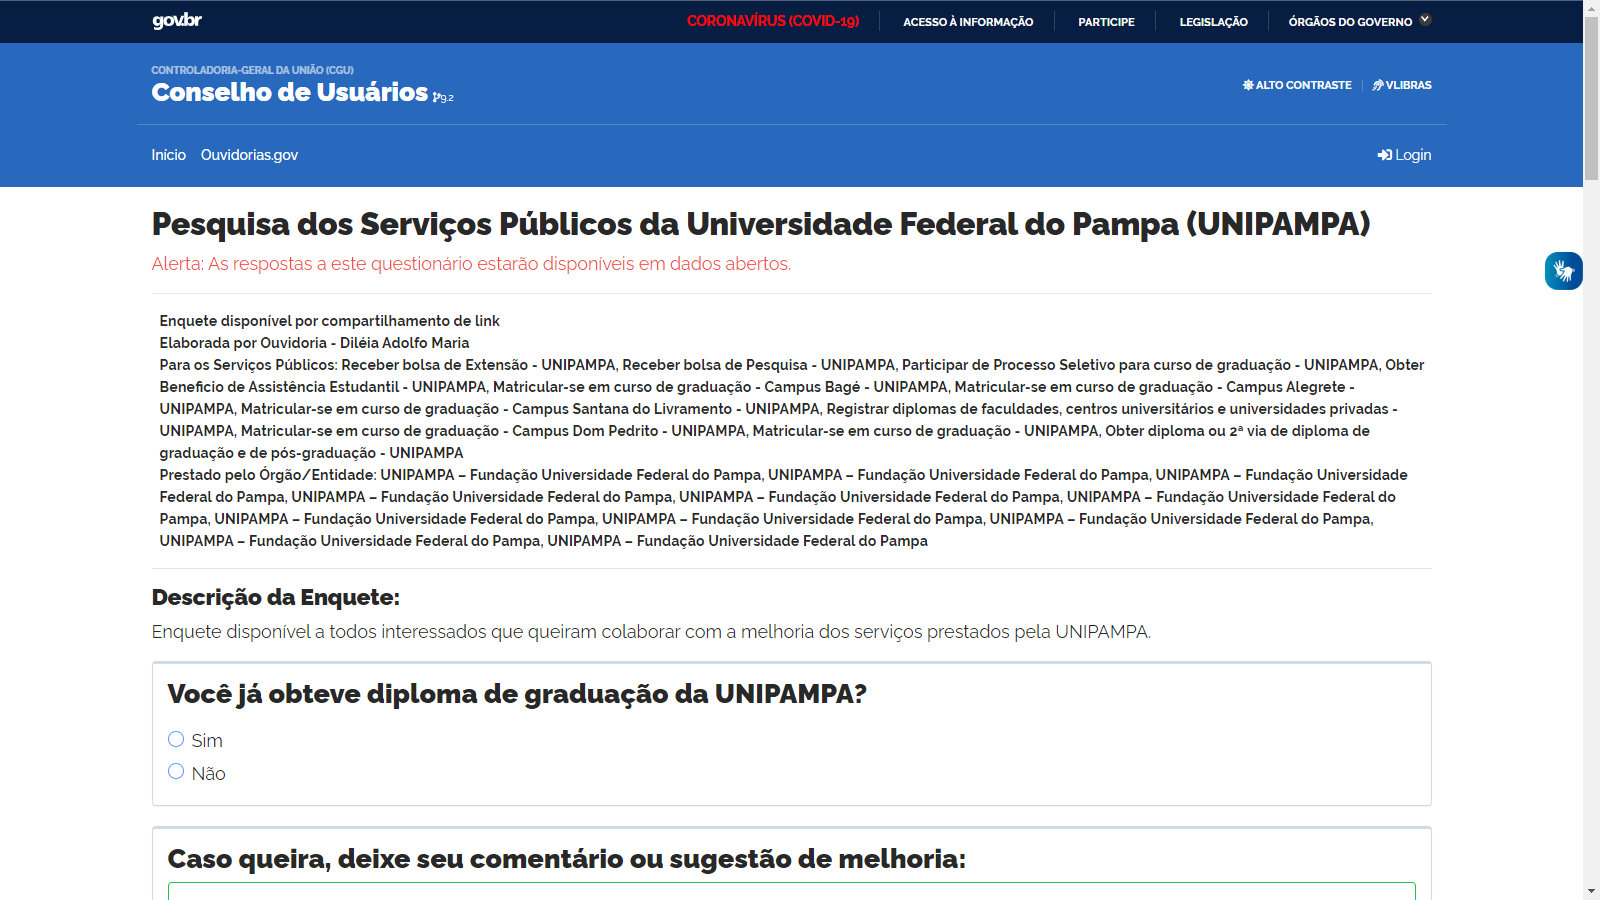 Print de tela do computador de pesquisa sobre serviços públicos prestados na Unipampa